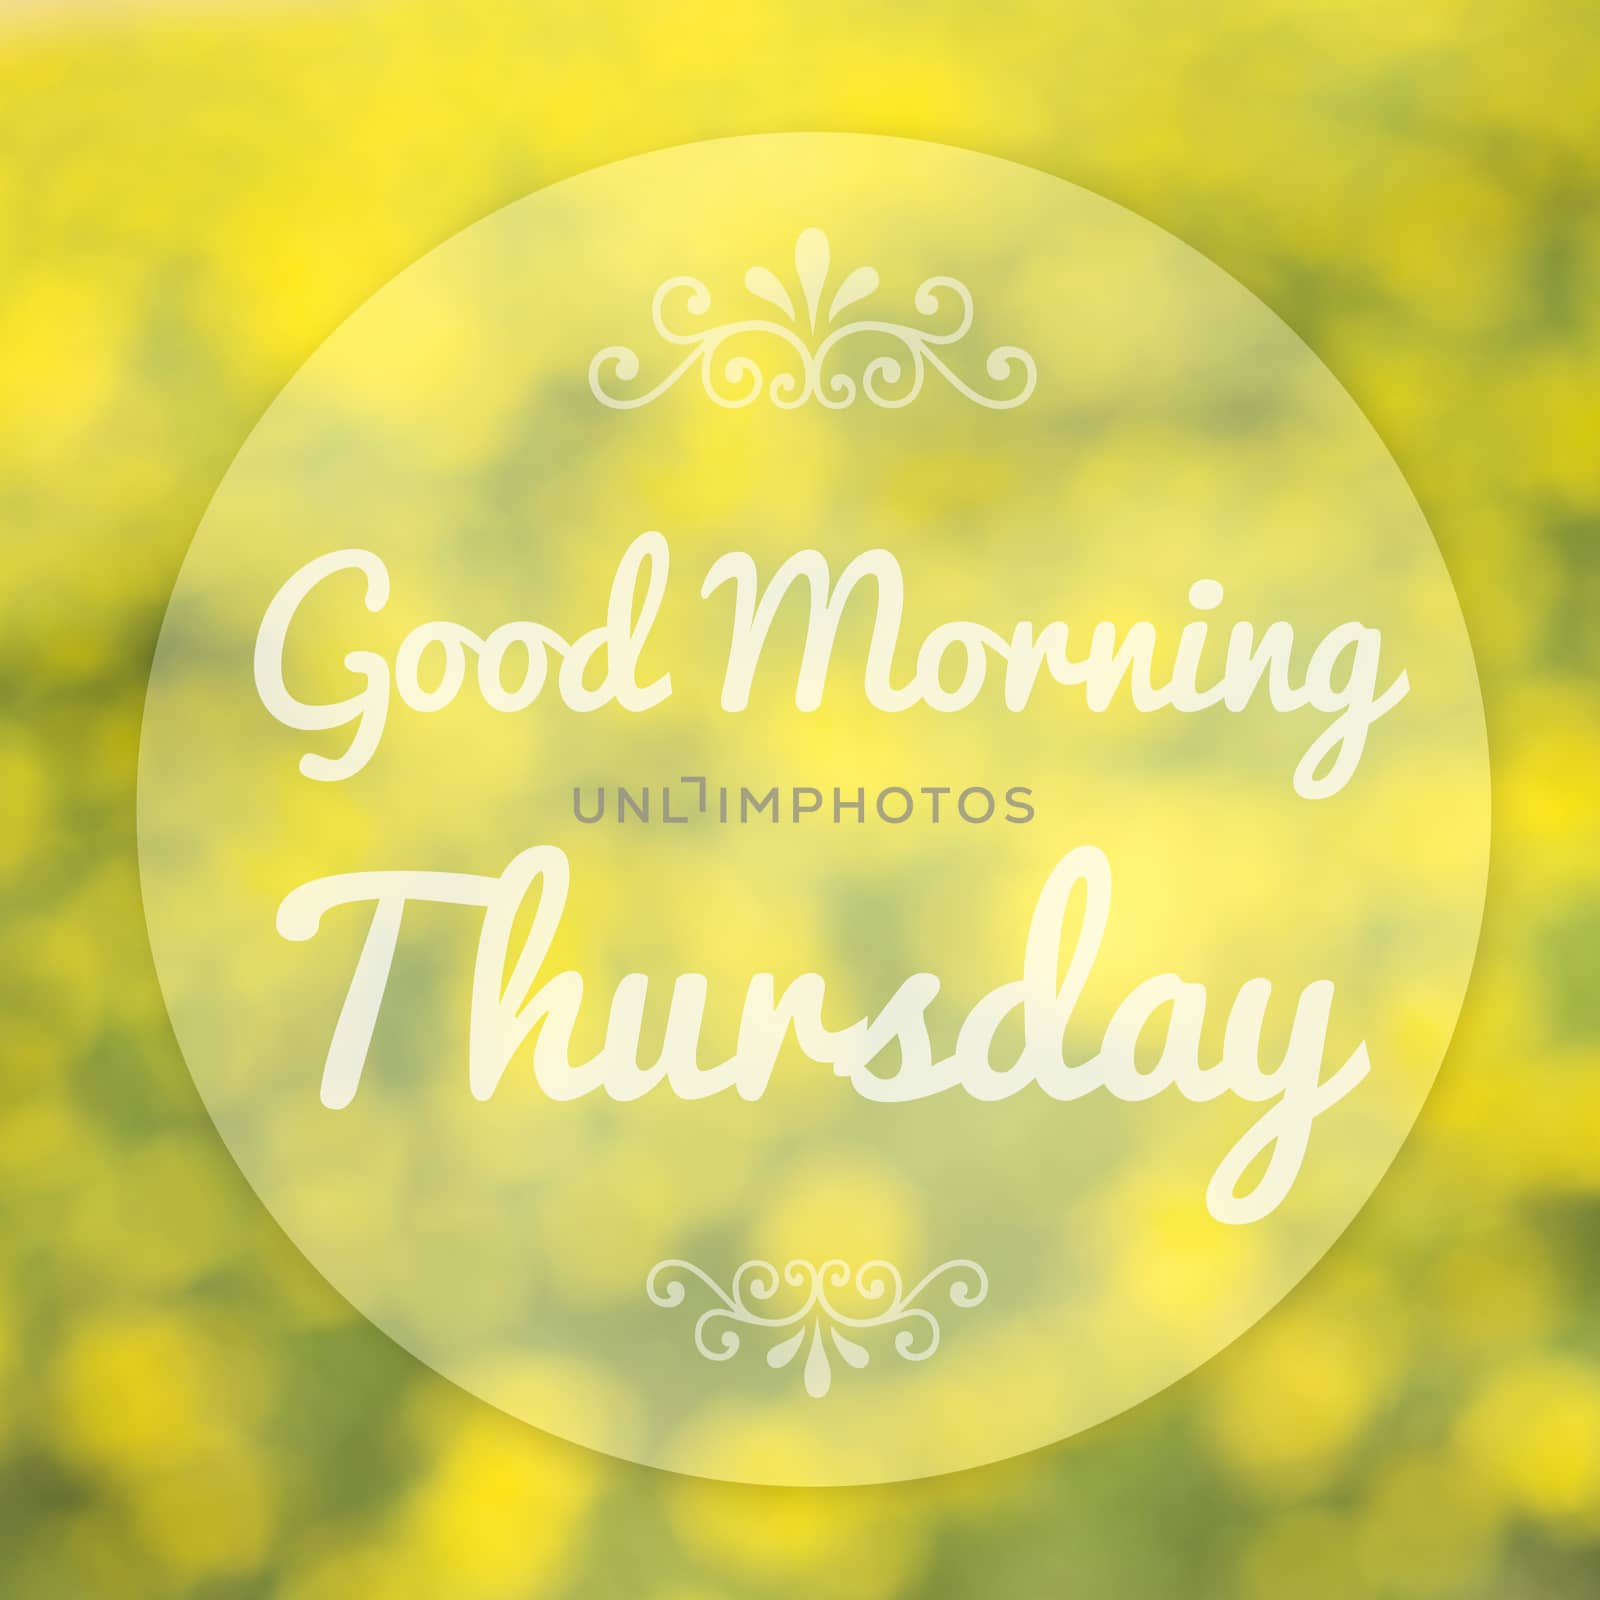 Good Morning Thursday on blur background